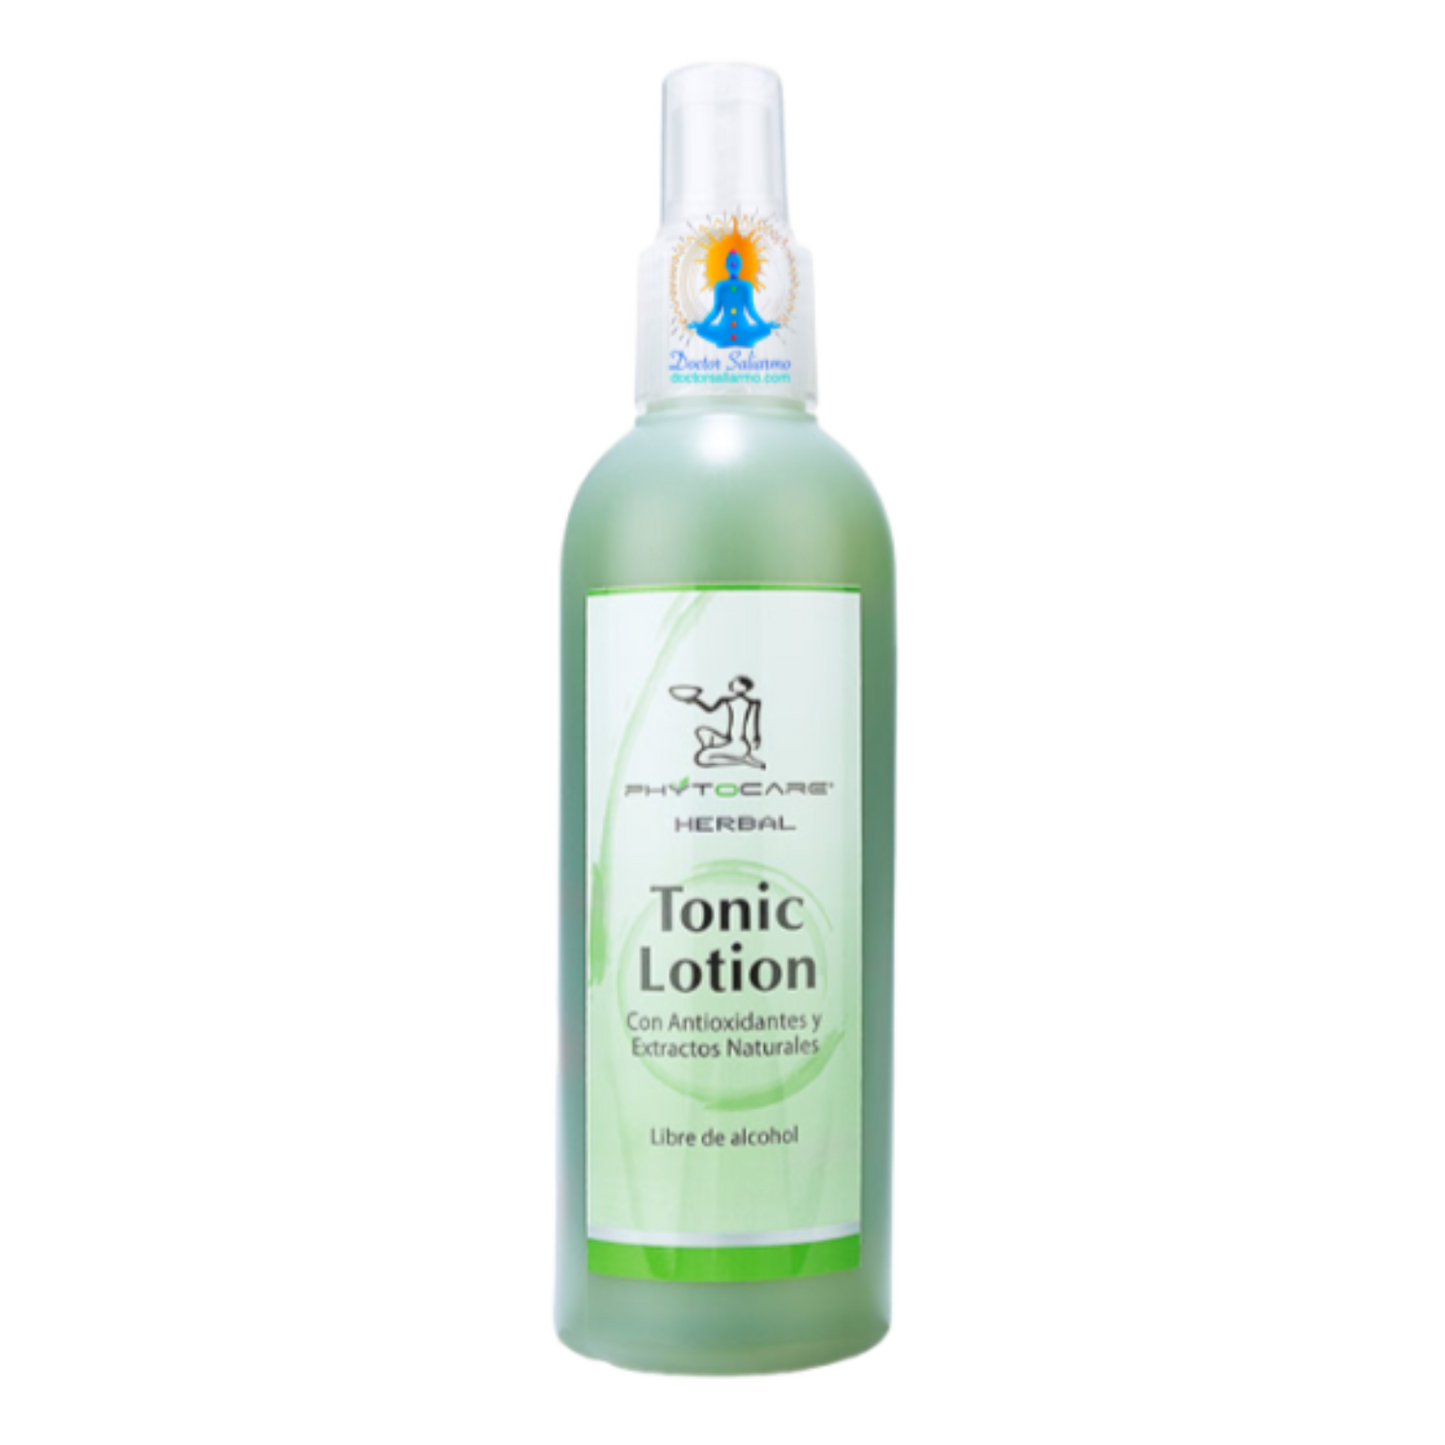 Loción tónica herbal de Phytocare Tonic Lotion es perfecto para un óptimo proceso de limpieza. Acondiciona y revitaliza la piel brindando un efecto de frescura y lozanía. Con antioxidantes y extractos naturales. Hidrata, refresca, equilibra y prepara la piel para la recepción de los demás productos del tratamiento.